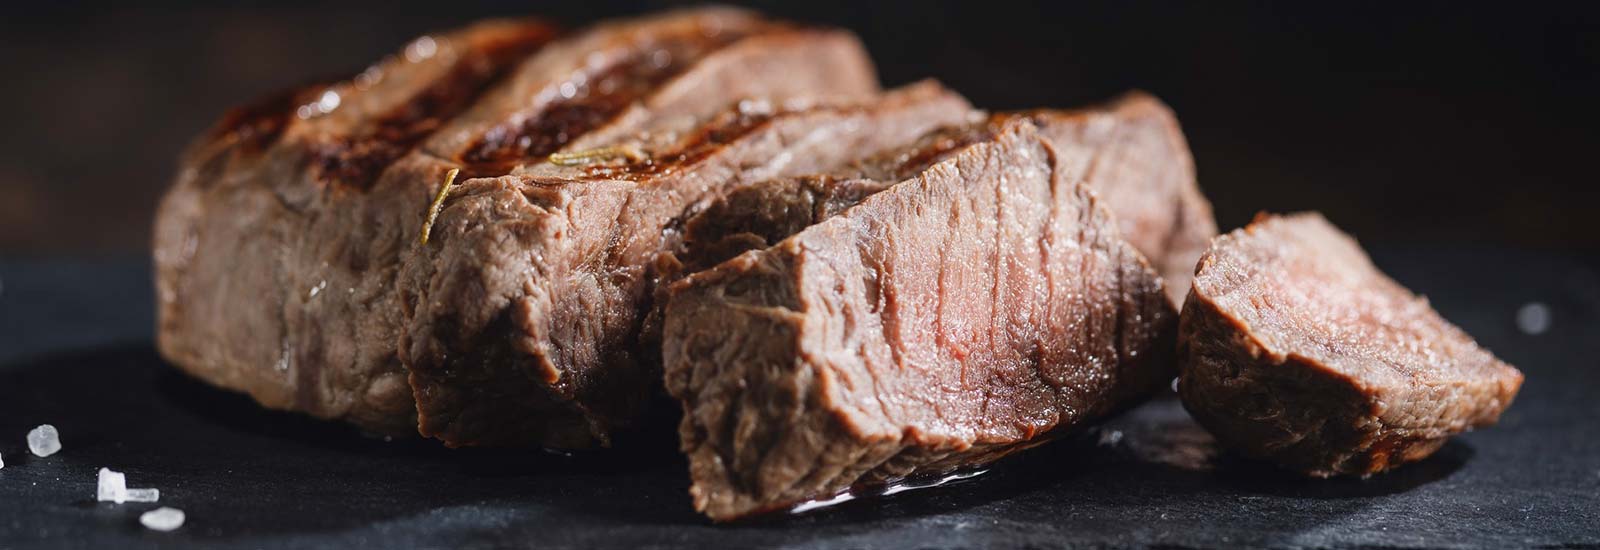 Comer carne en Semana Santa: cuándo sí se puede y por qué